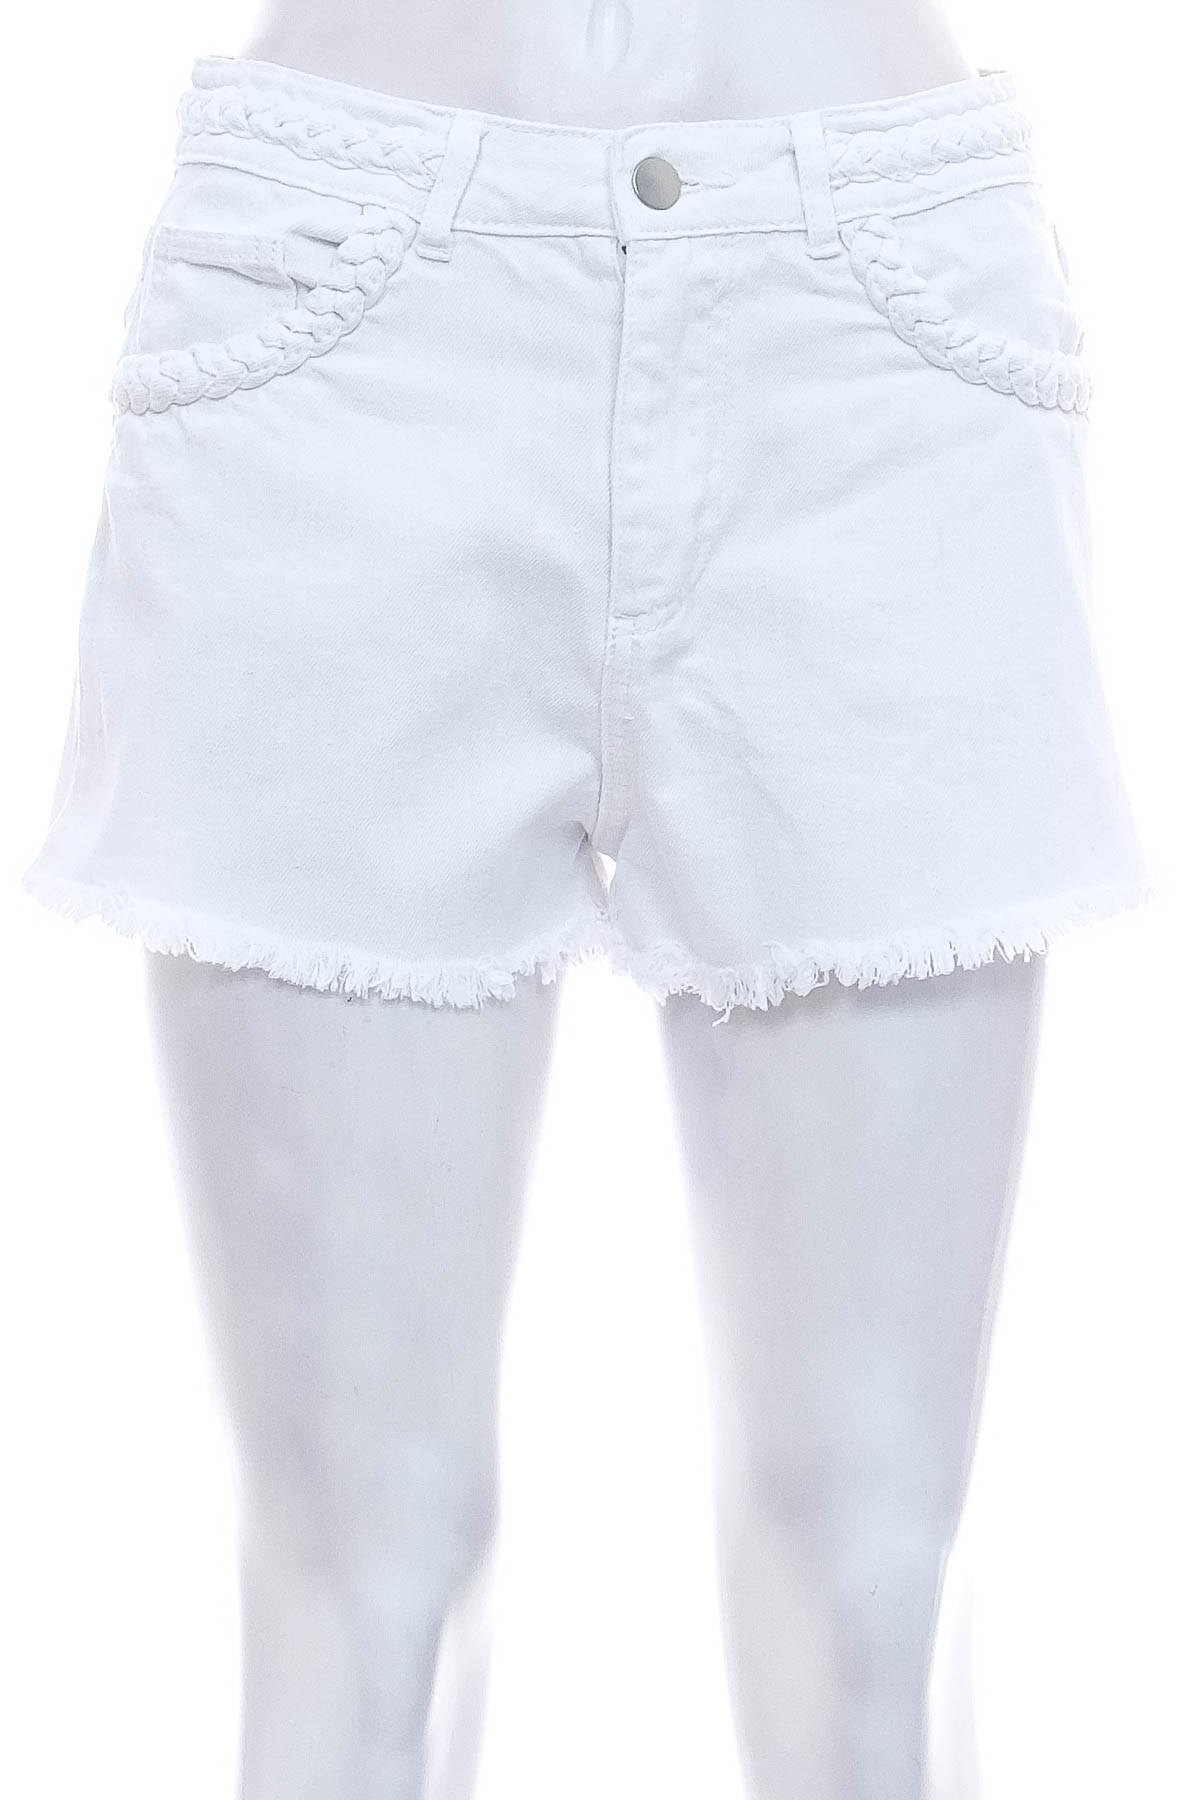 Female shorts - Denim Co. - 0